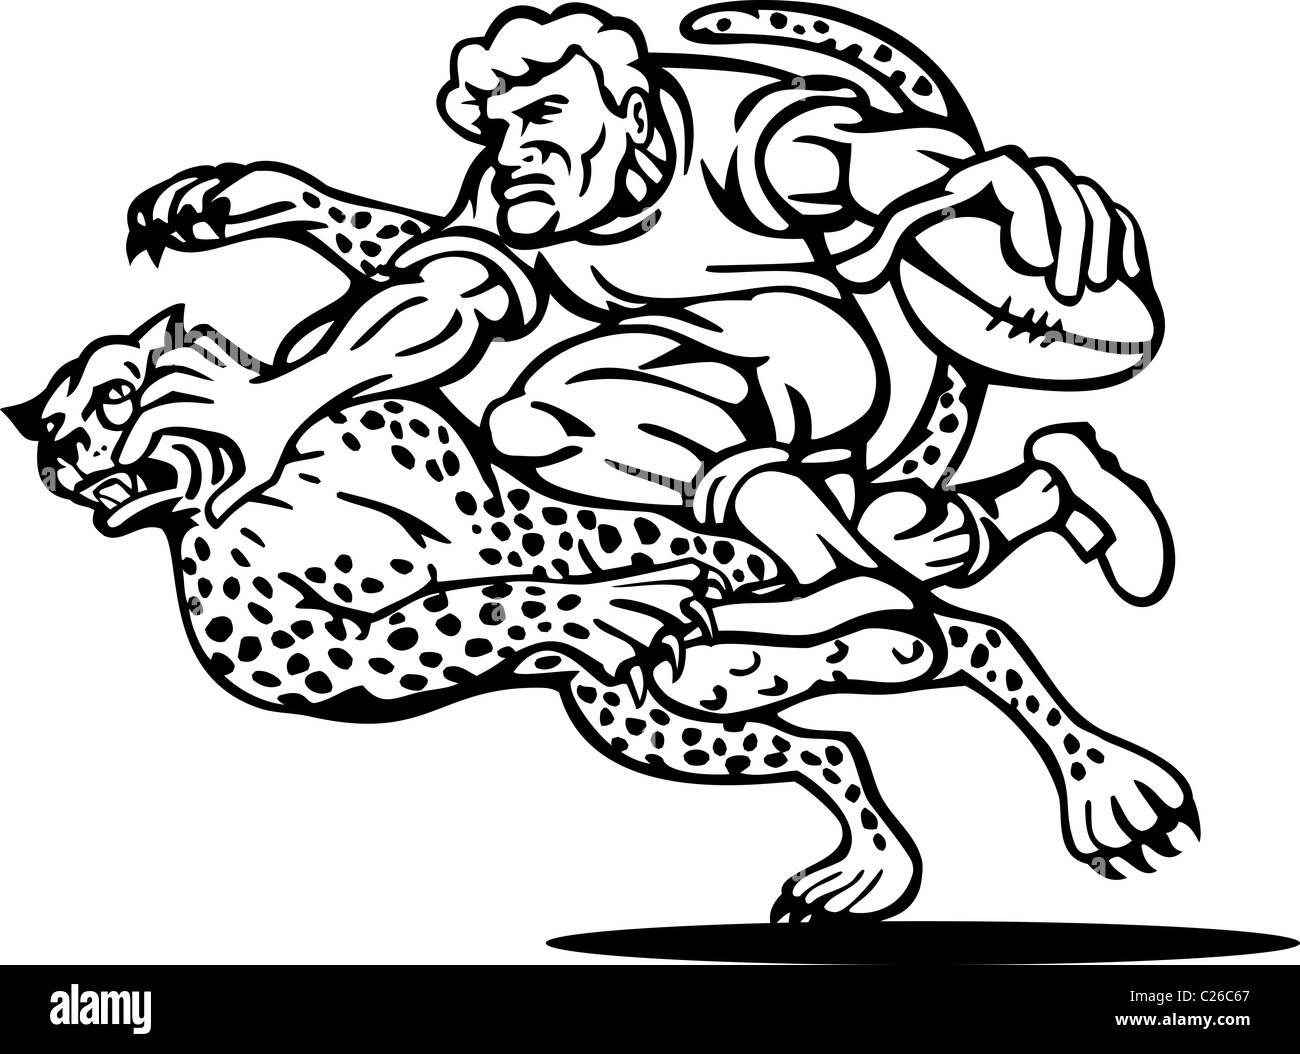 Beispiel für ein Rugby-Spieler läuft mit dem Ball Tackle angegriffen von einem Geparden auf isolierte Hintergrund getan in schwarz / weiß Stockfoto